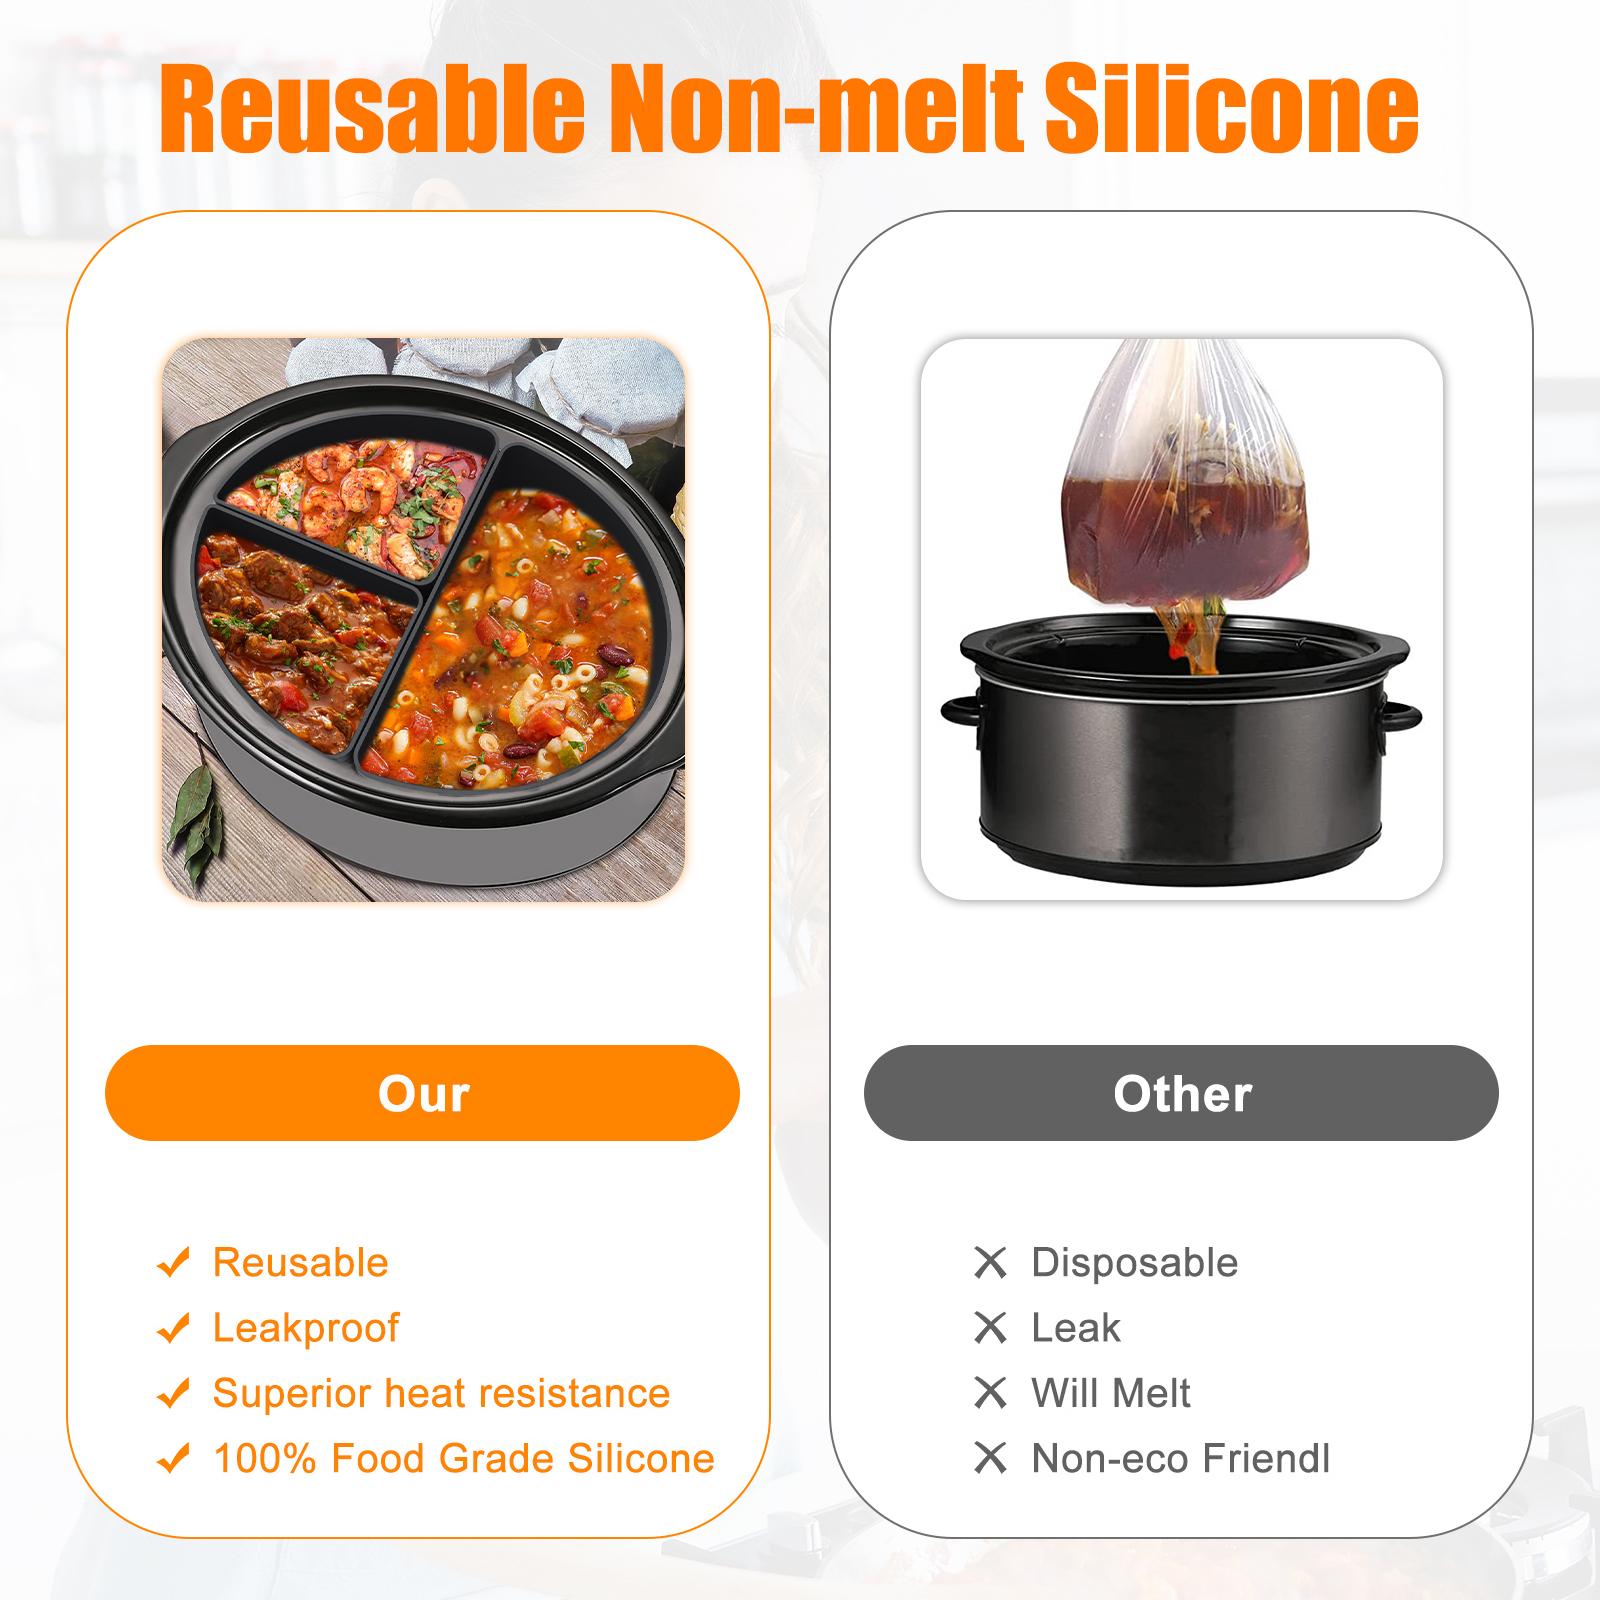 6 Qt Crockpot Silicone Cooker Divider Liner Reusable & Leakproof